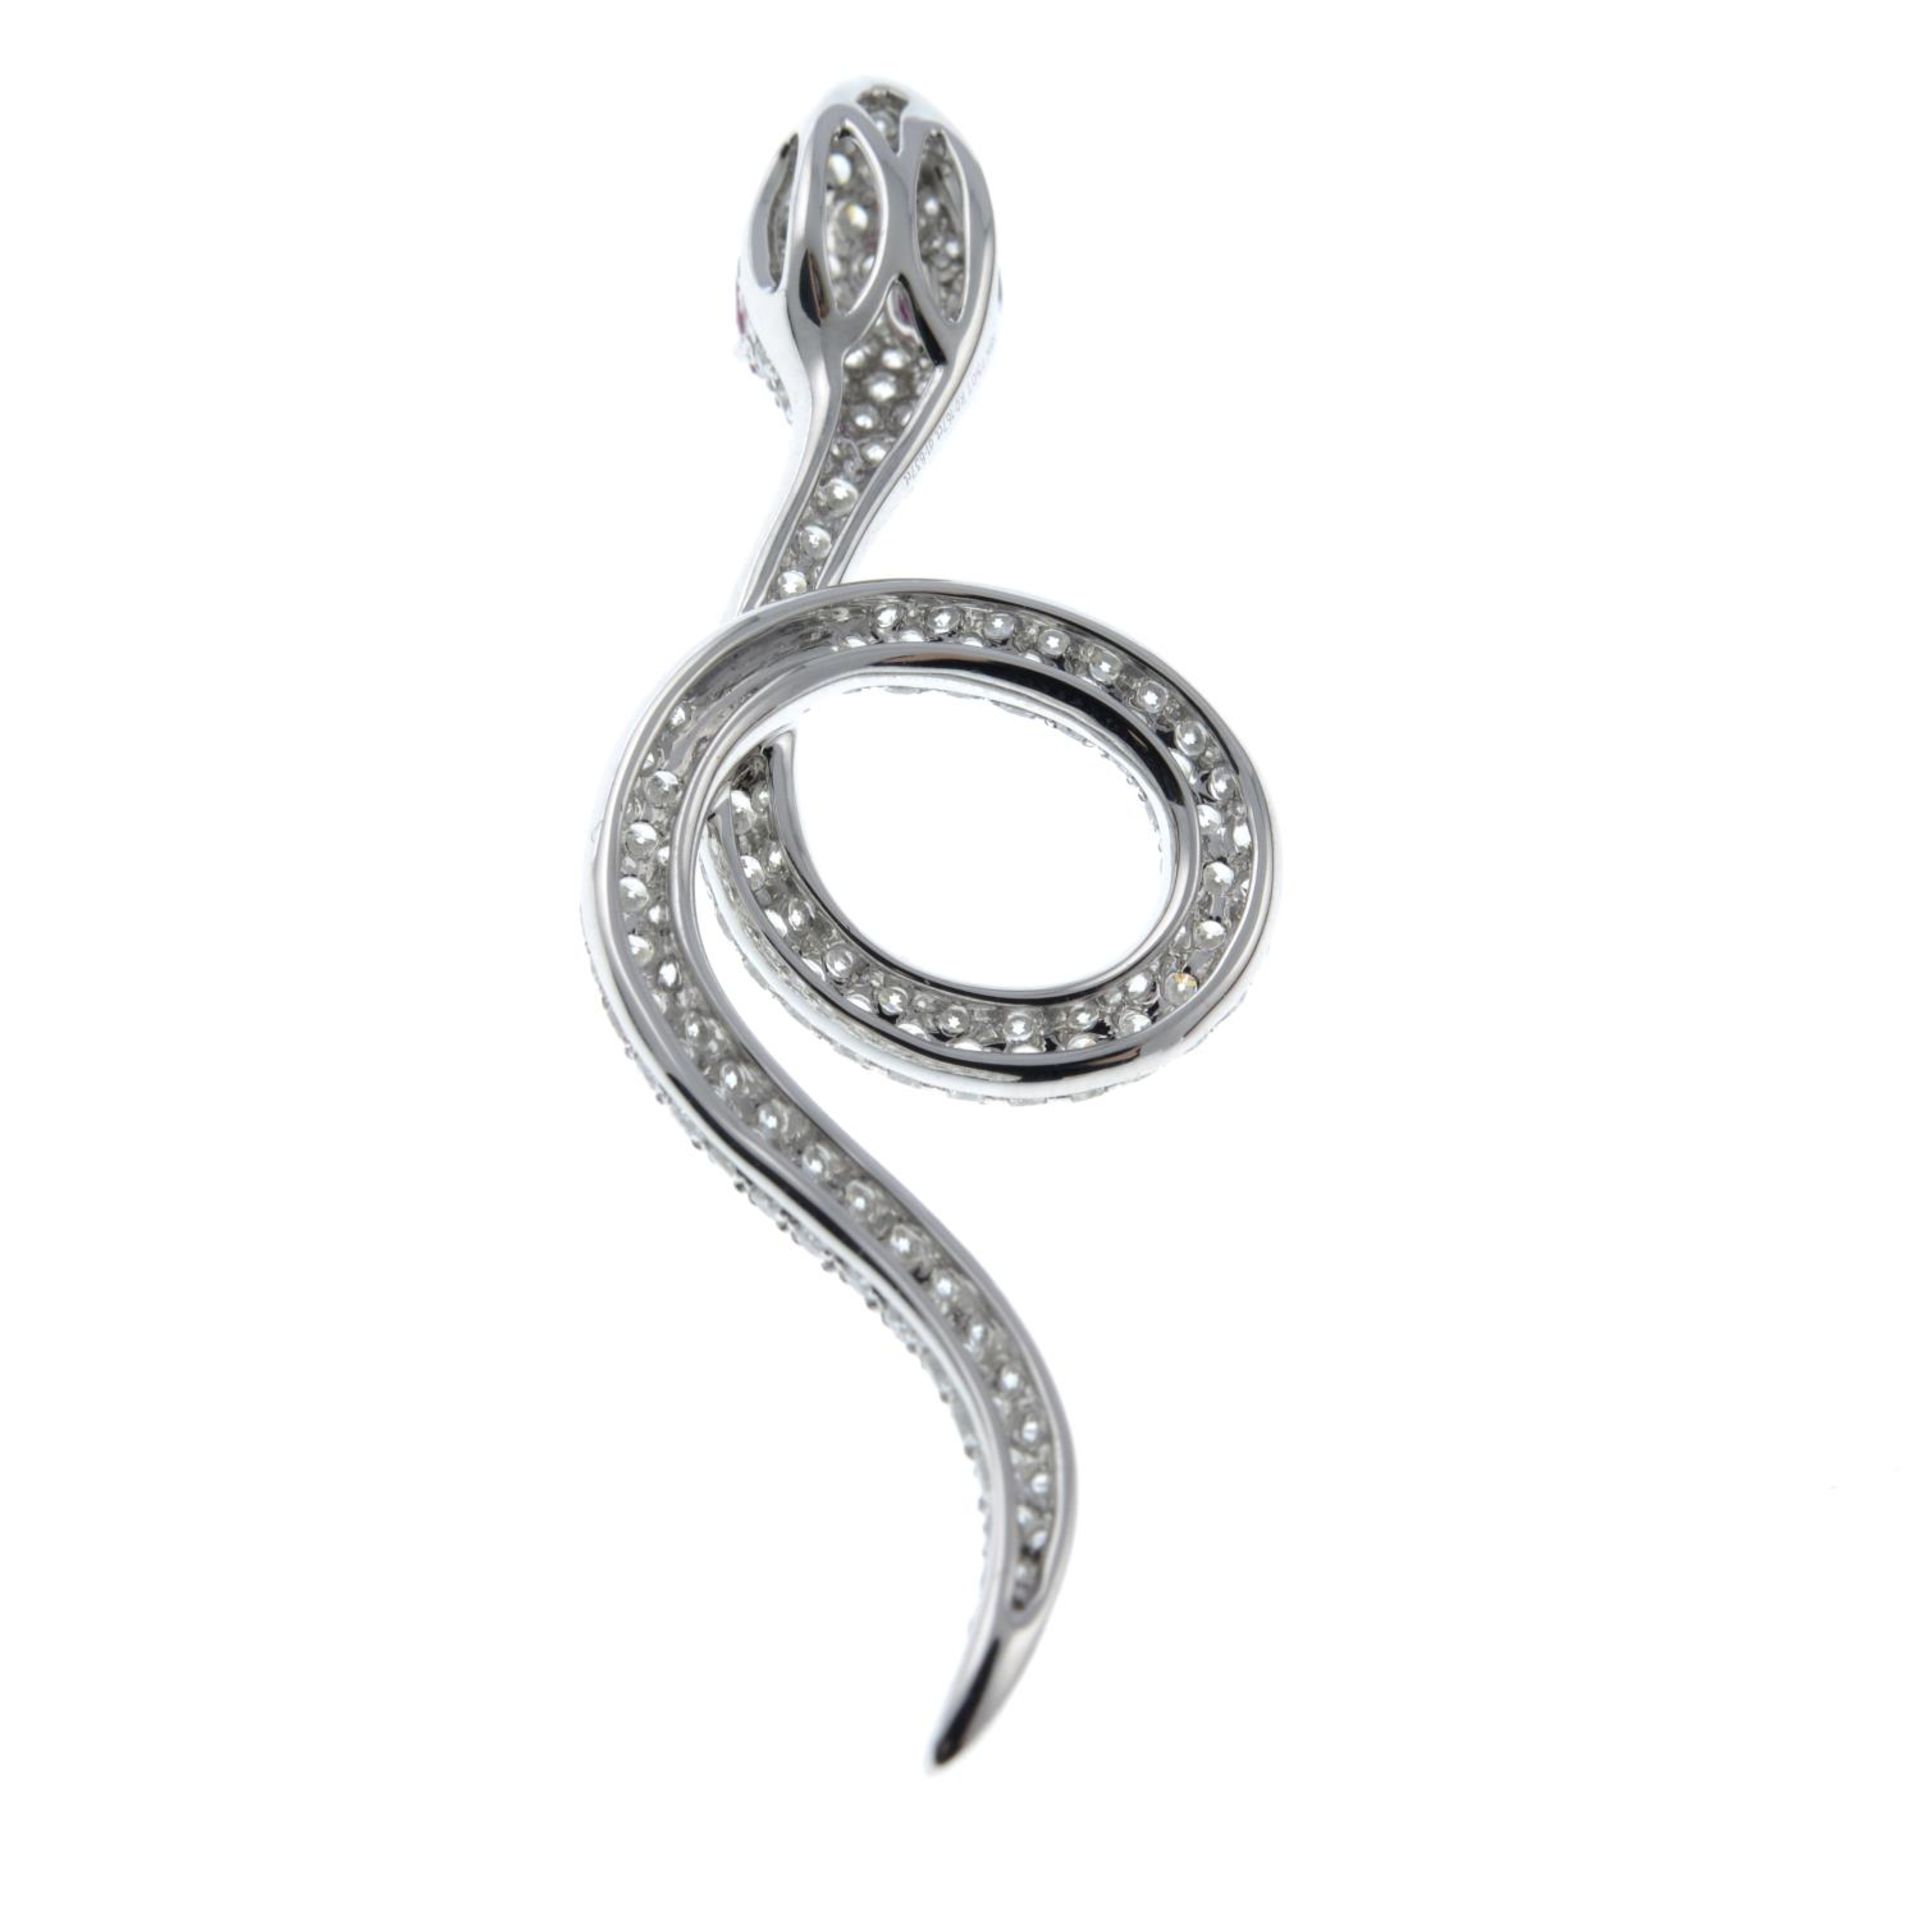 A pavé-set diamond snake pendant, - Image 4 of 4